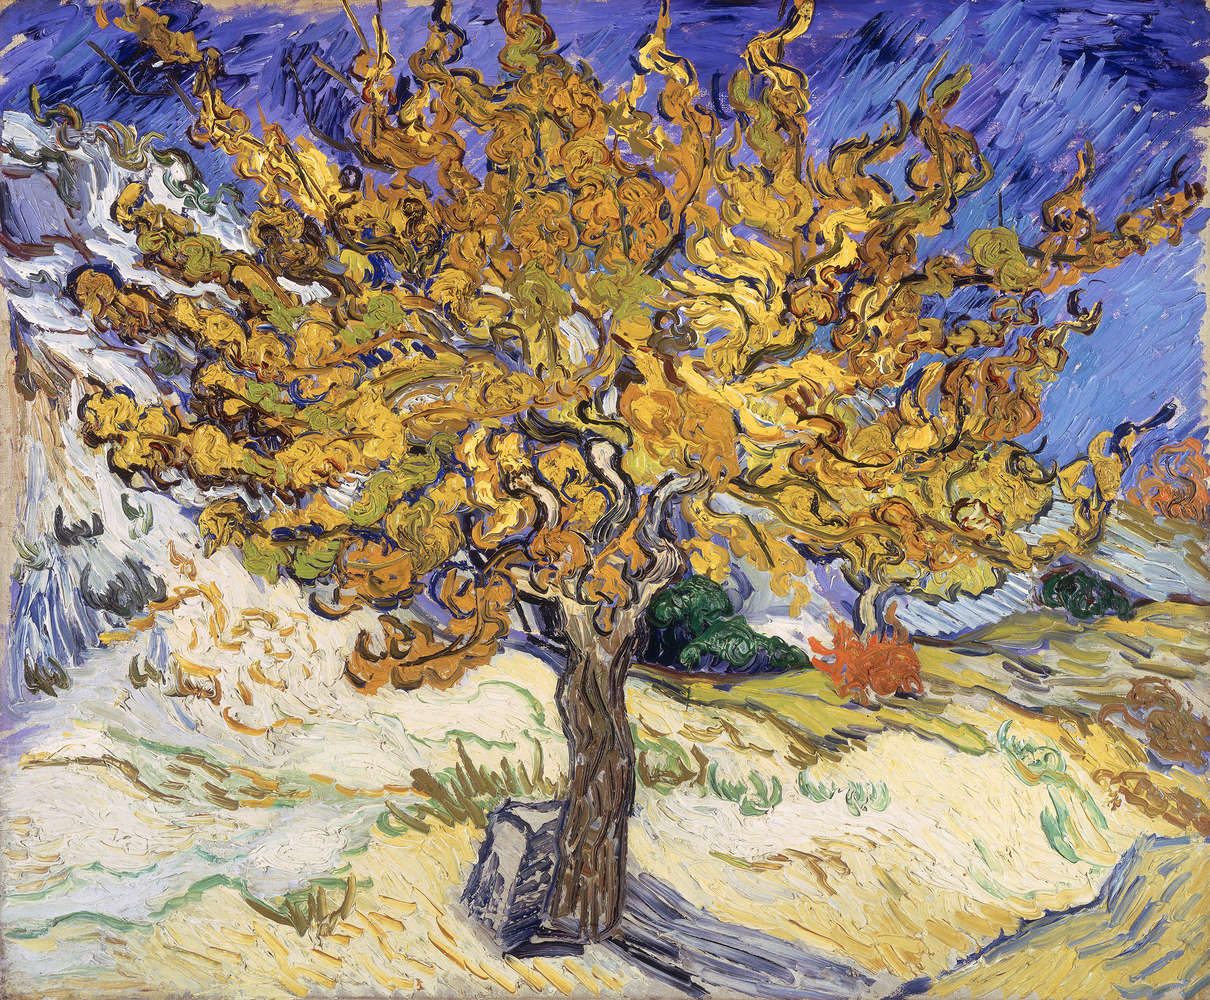             Fototapete "Maulbeerba" von Vincent van Gogh
        